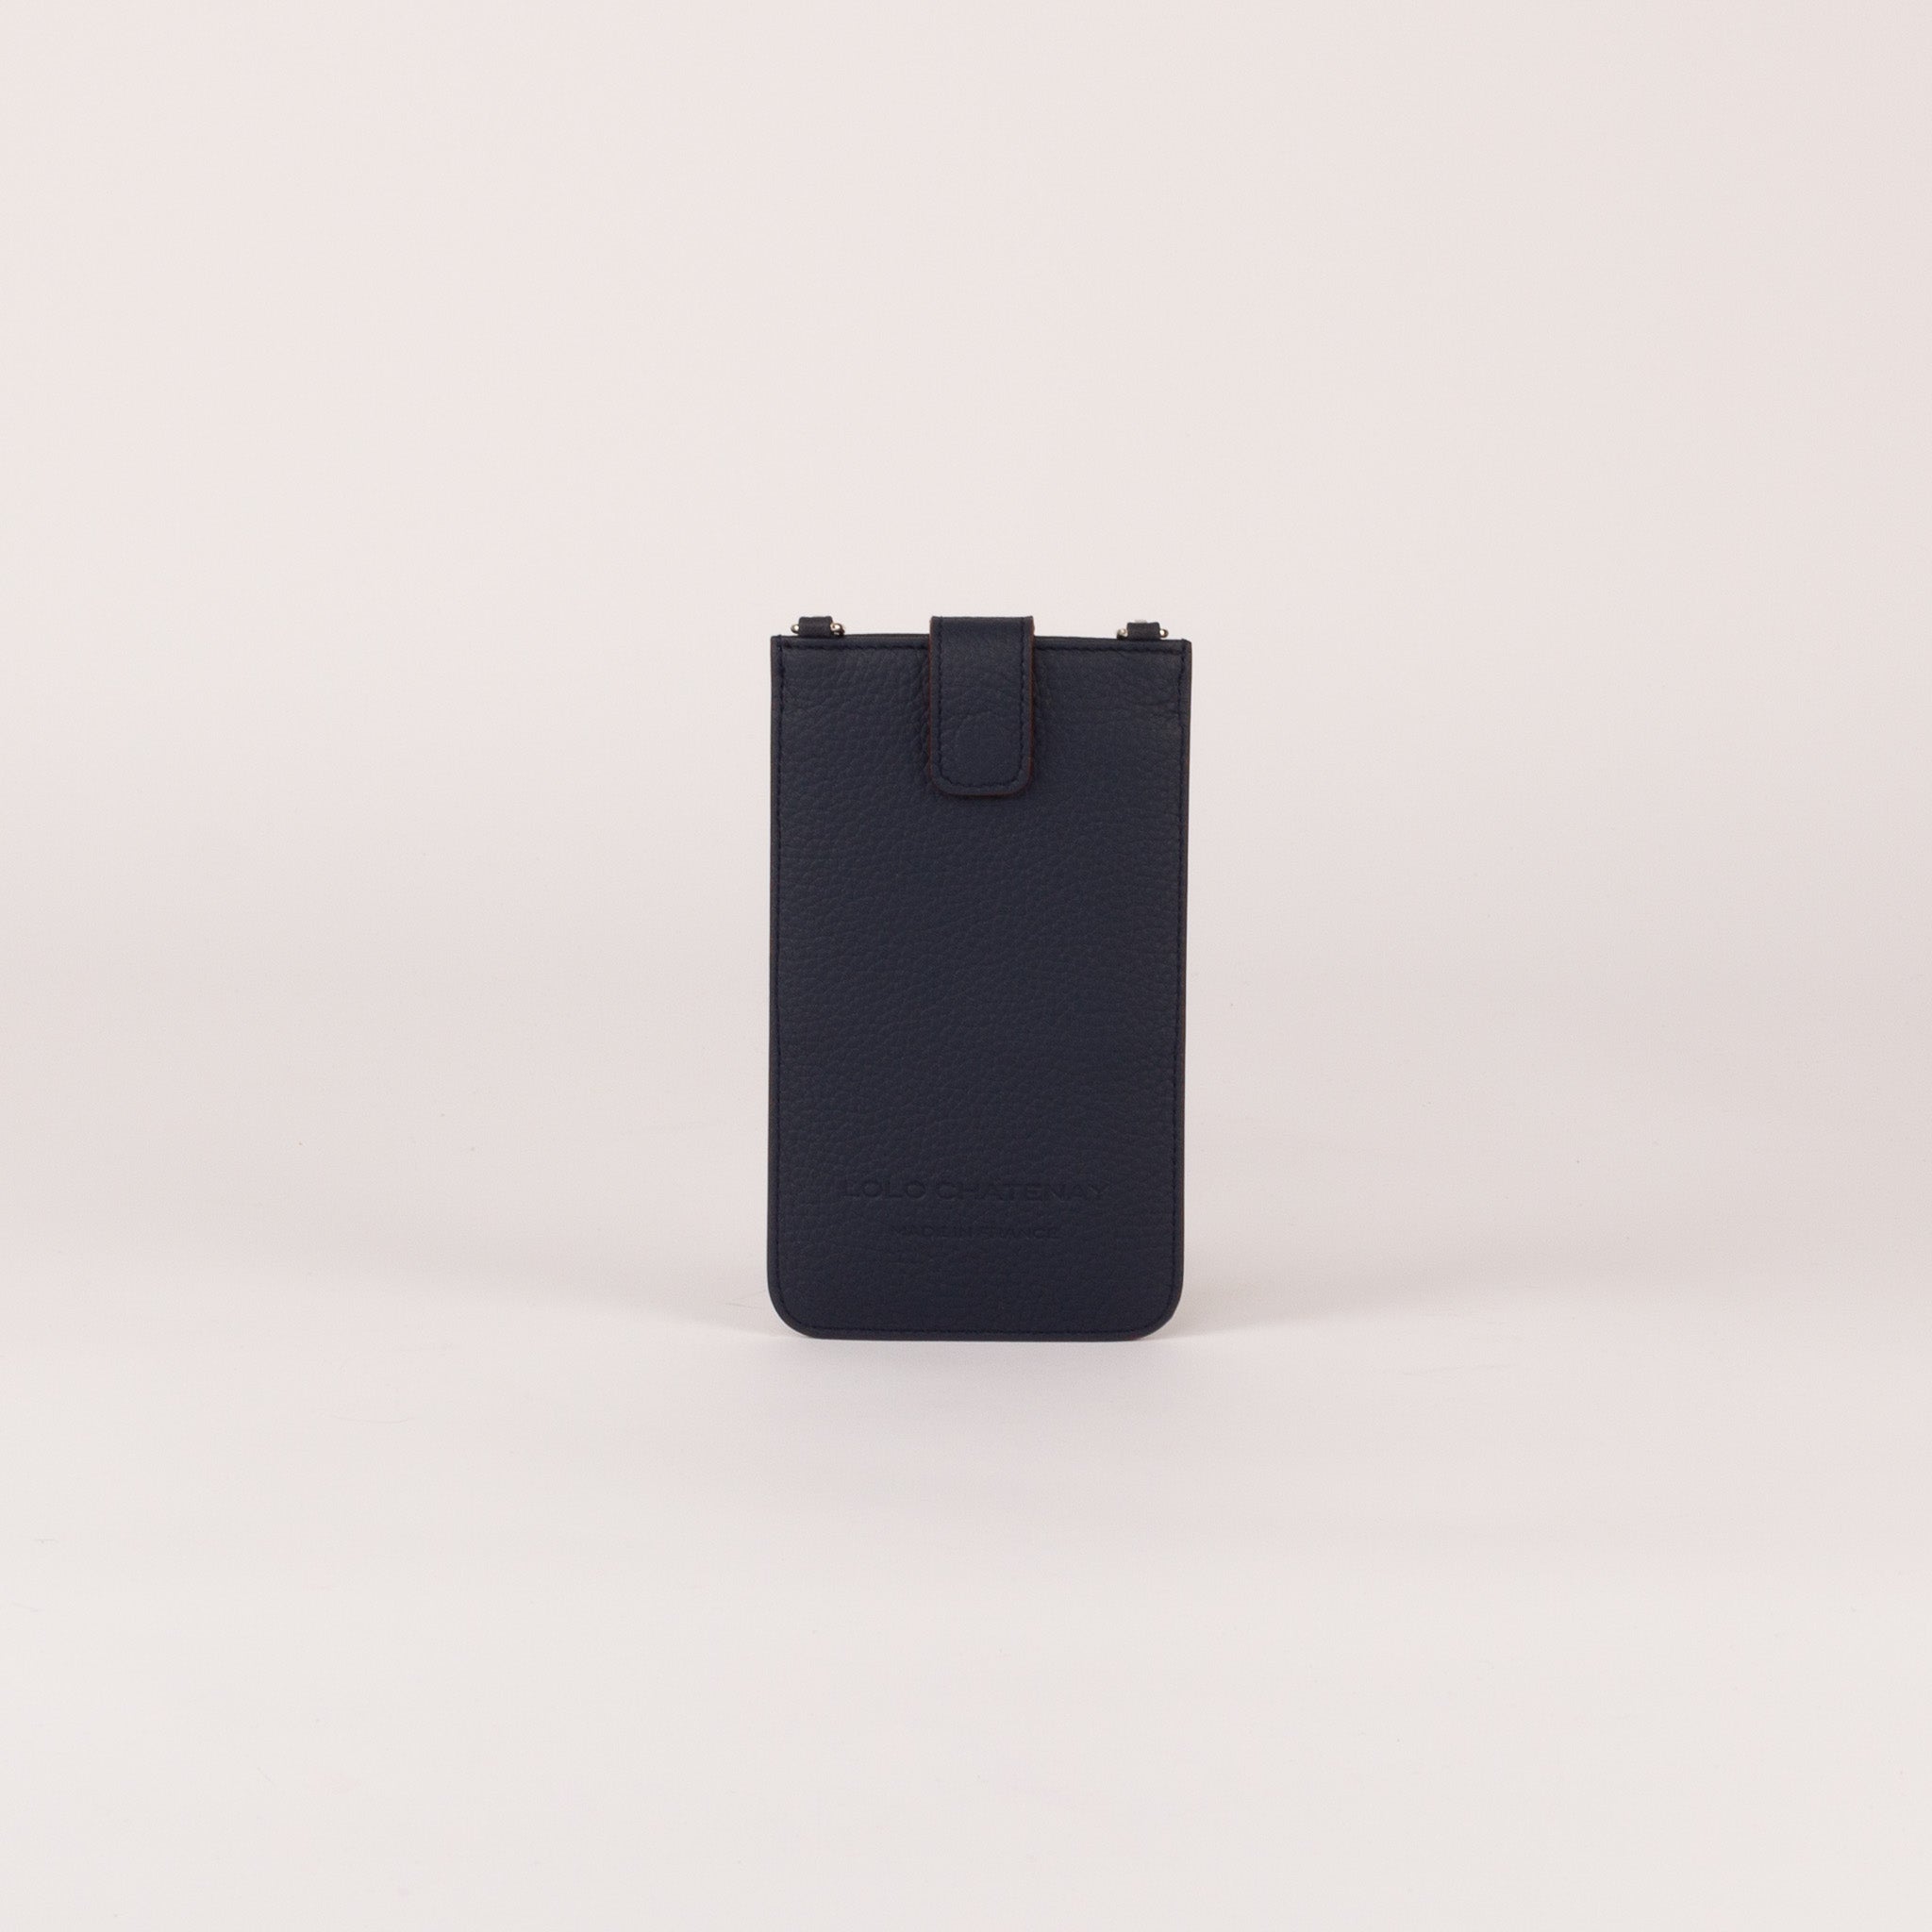 Phone Pocket - Adjustable Shoulder Strap